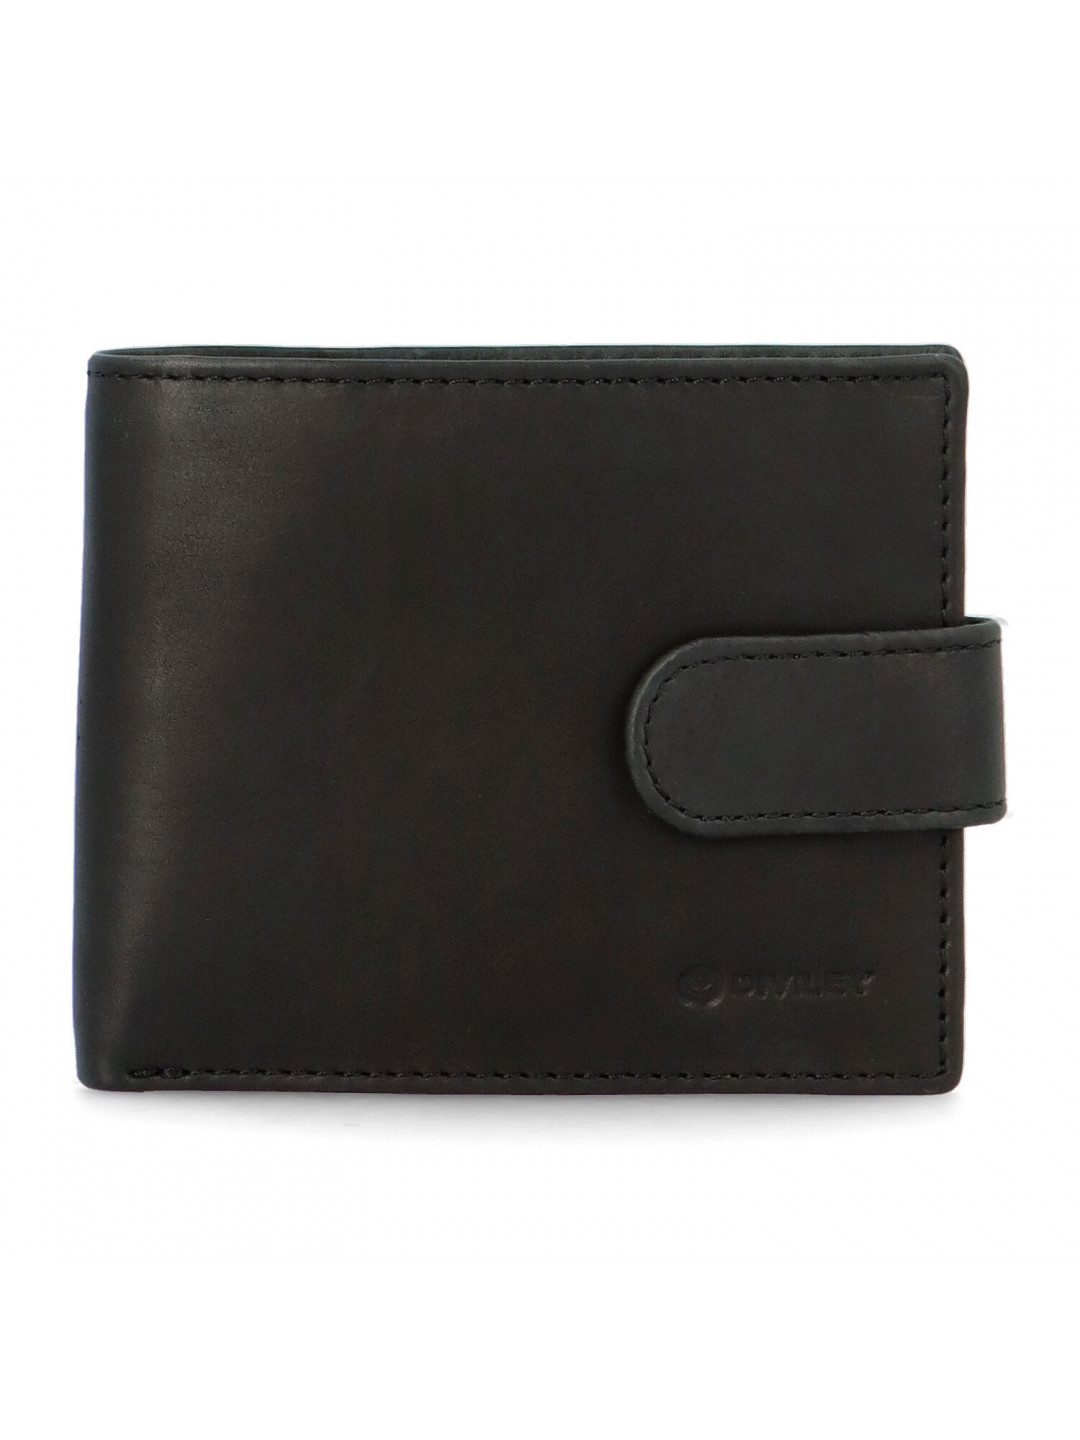 Pánská kožená peněženka černá – Diviley Truffy